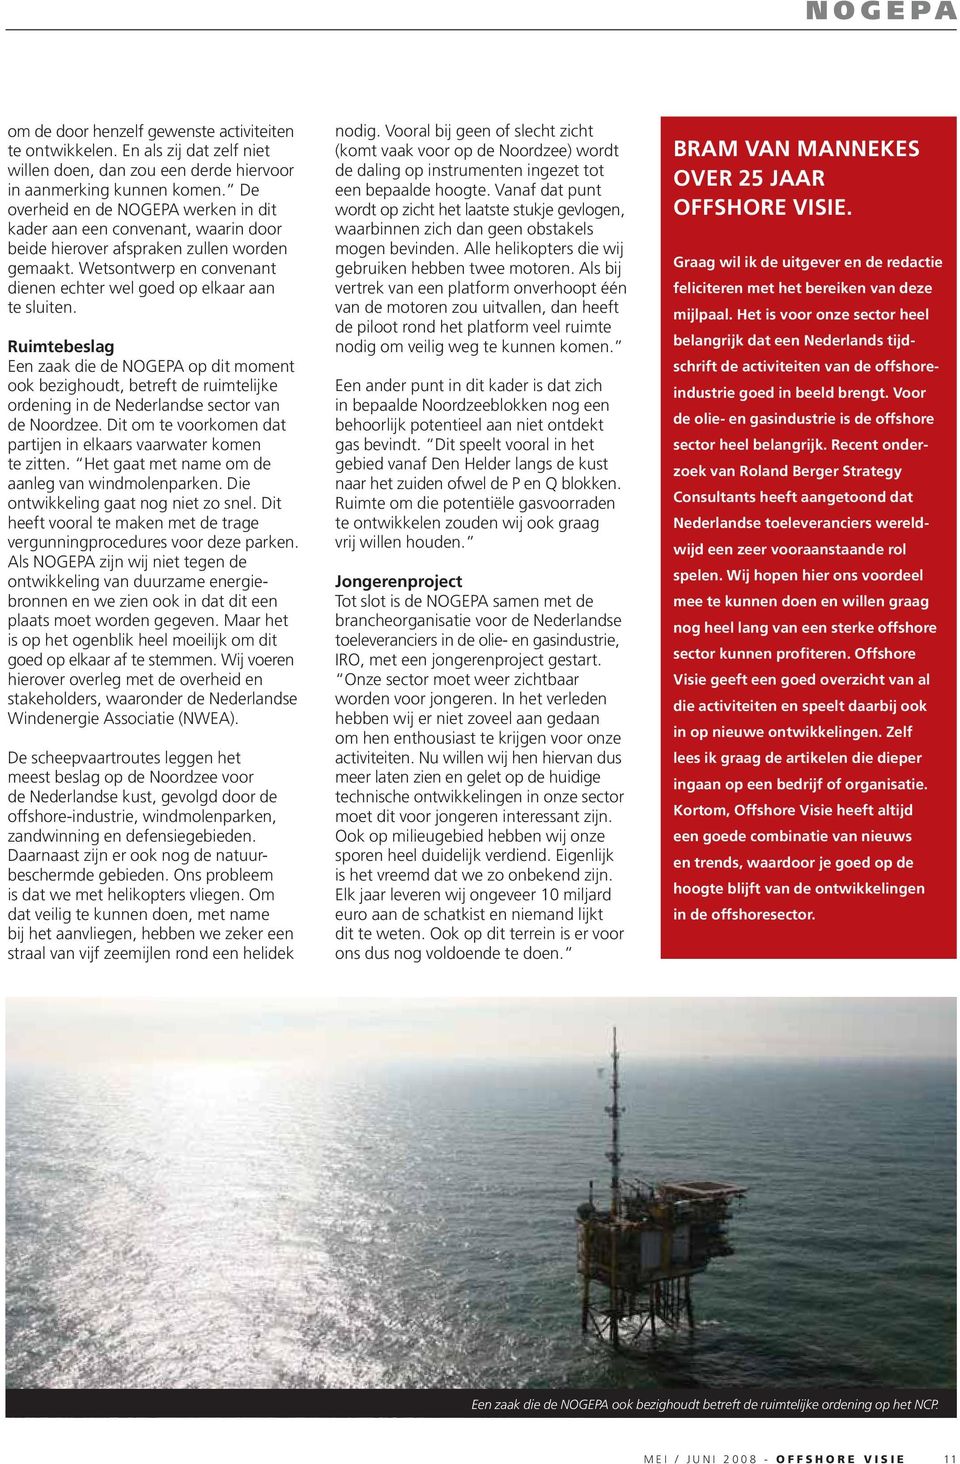 Ruimtebeslag Een zaak die de NOGEPA op dit moment ook bezighoudt, betreft de ruimtelijke ordening in de Nederlandse sector van de Noordzee.